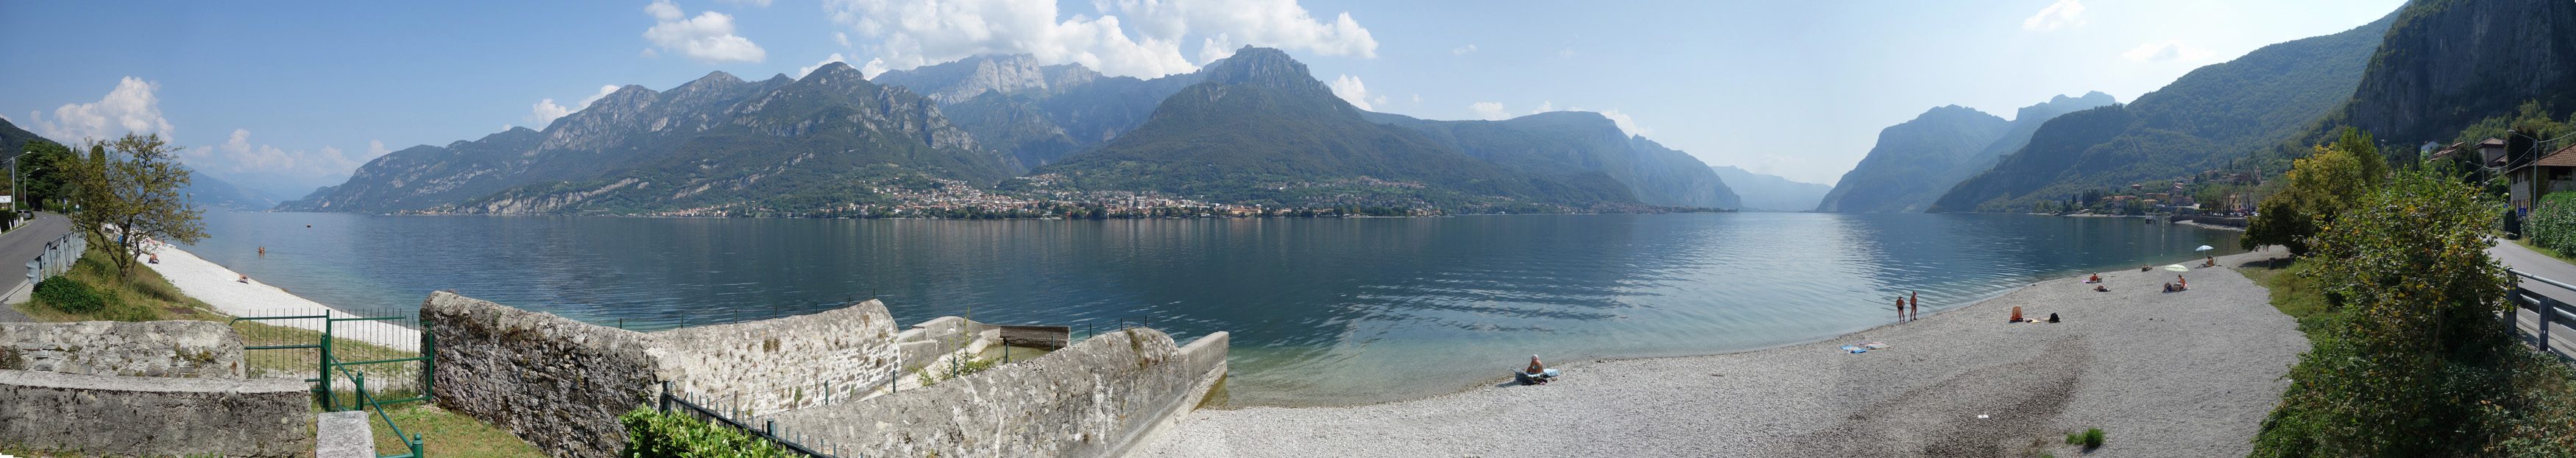 Lago-di-Como-klein 2.jpg